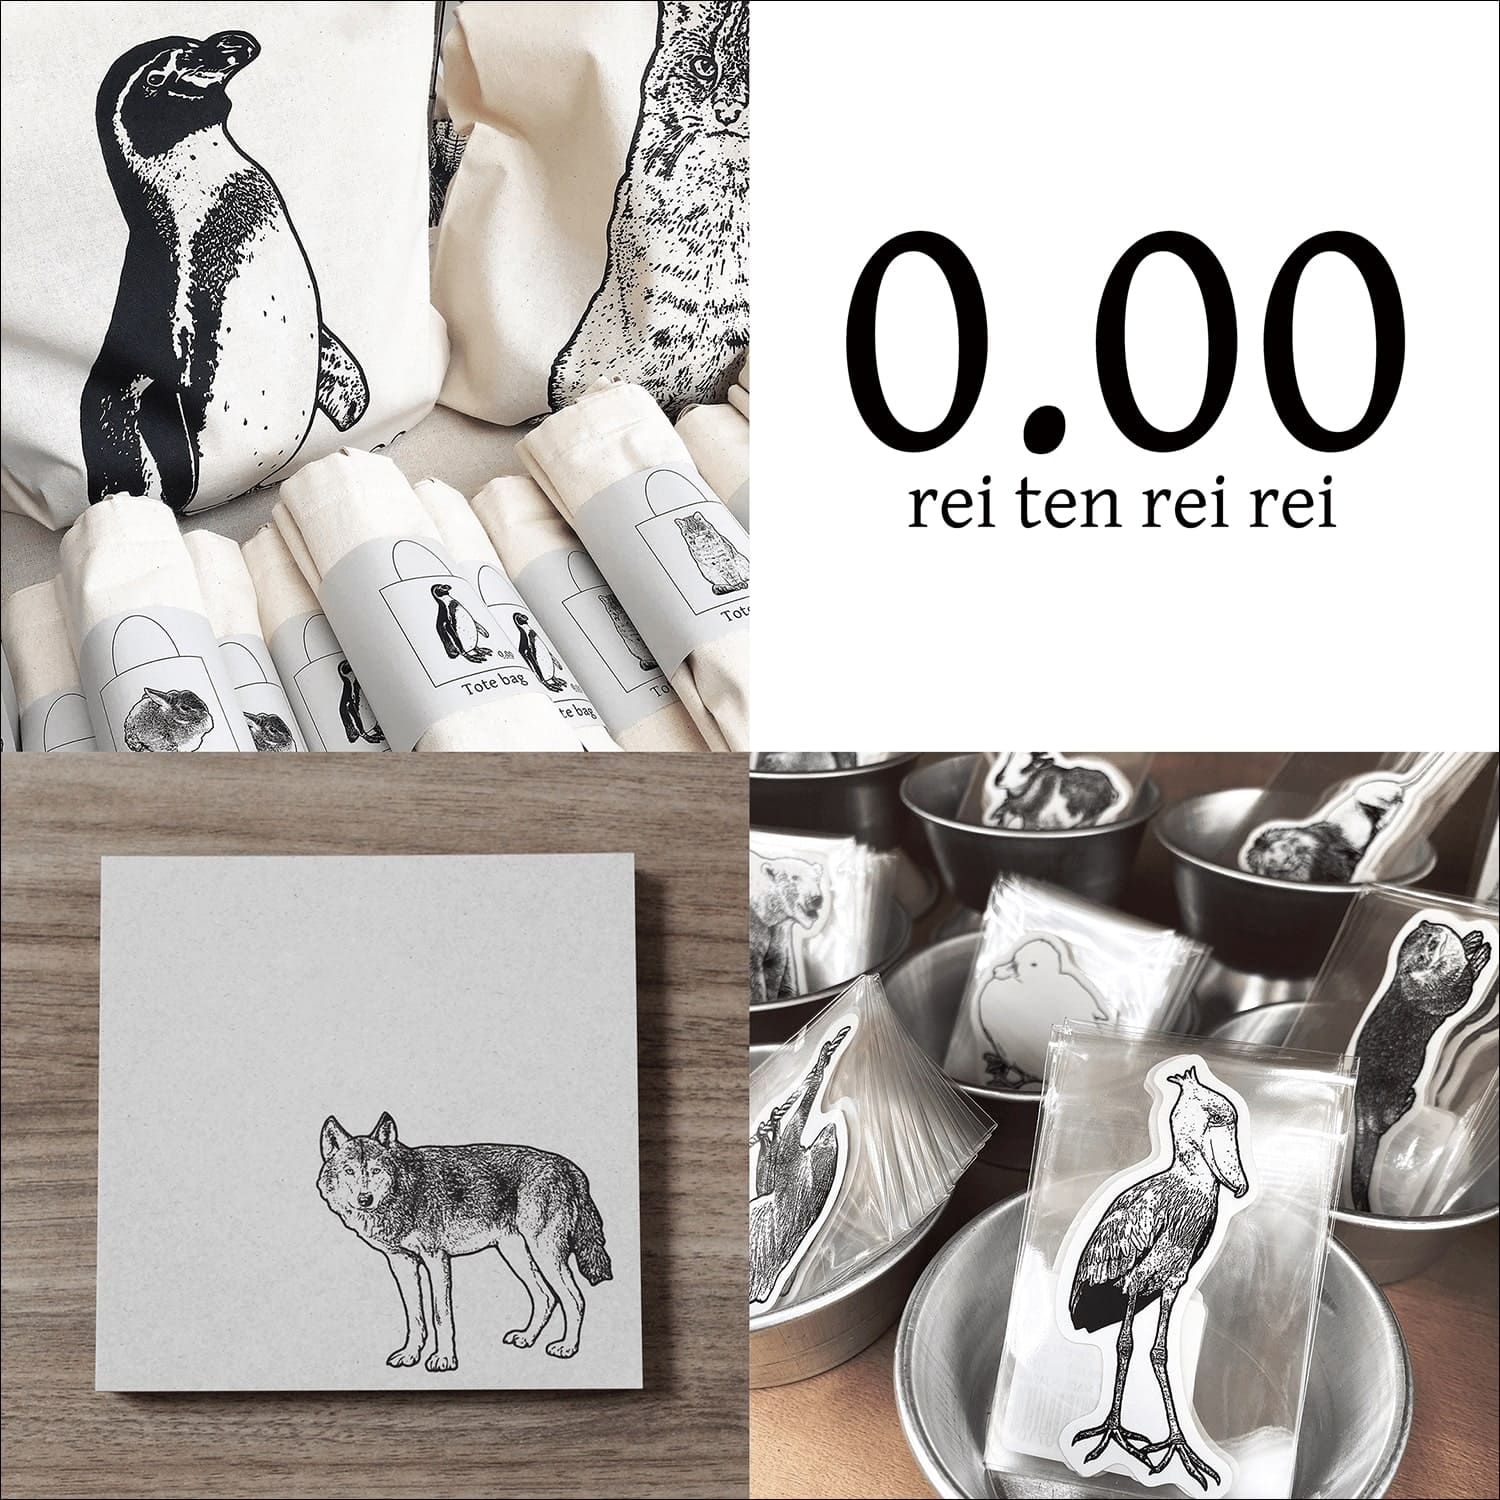 動物デザインの文具と雑貨 0.00 (rei ten rei rei)